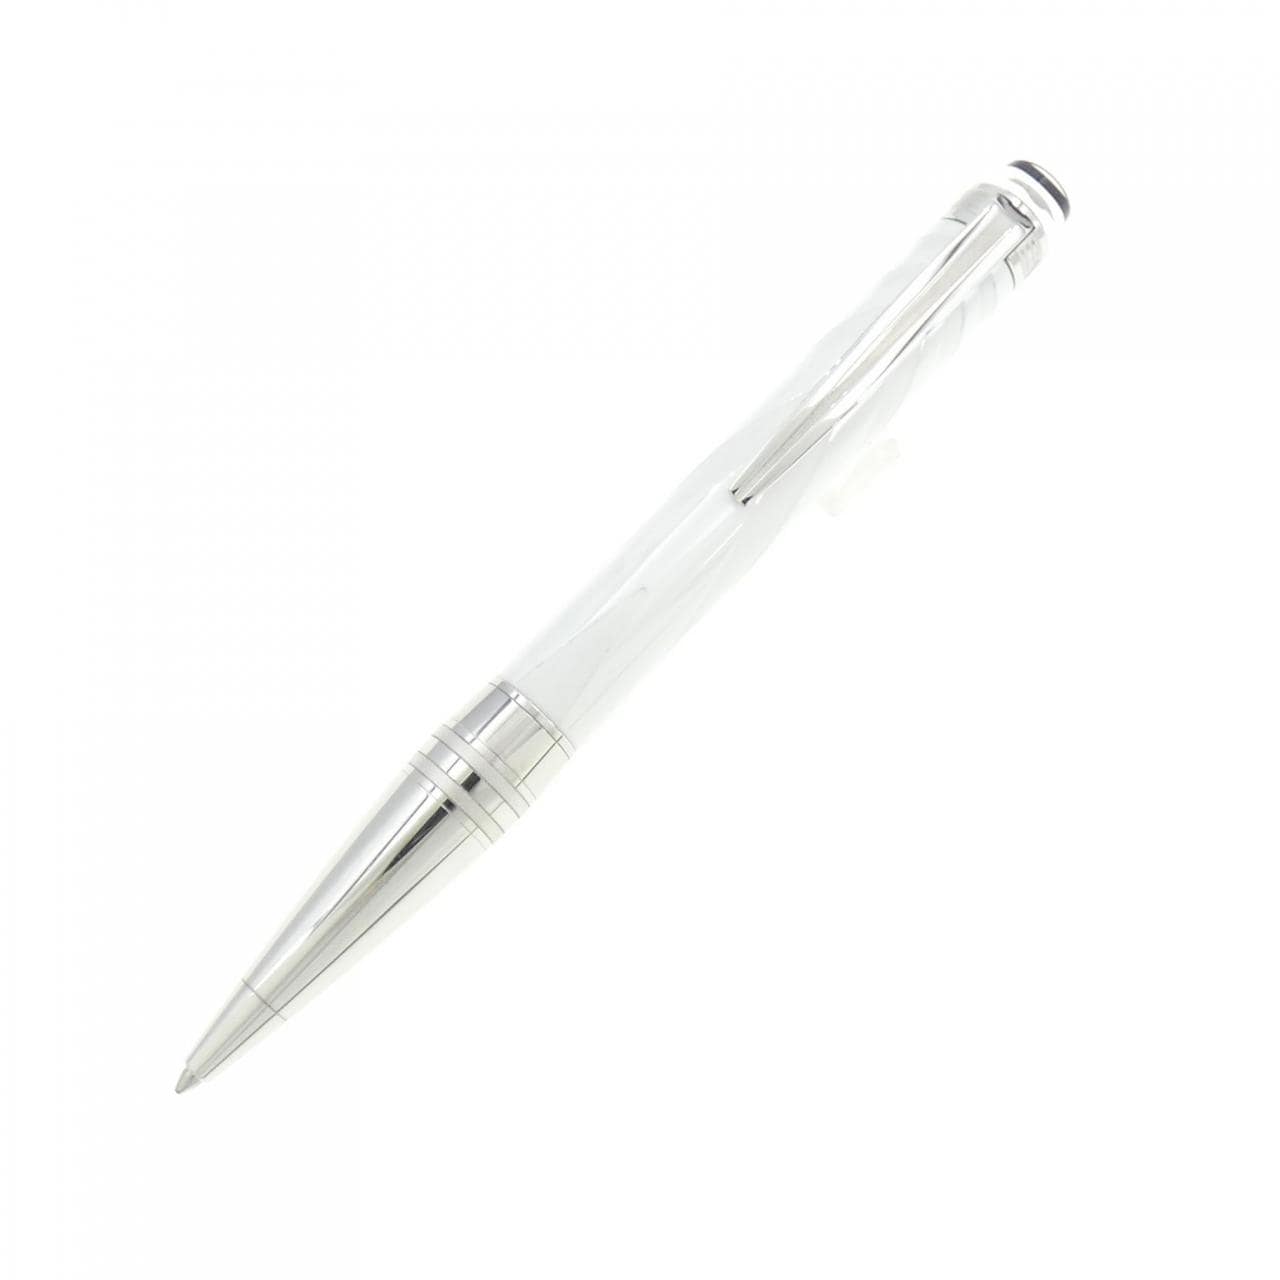 MONTBLANC（筆記具、時計） 101700799 モンブラン MONTBLANC スターボールペン ホワイト メタル 筆記用具 ツイスト式 ボールペン ユニセックス